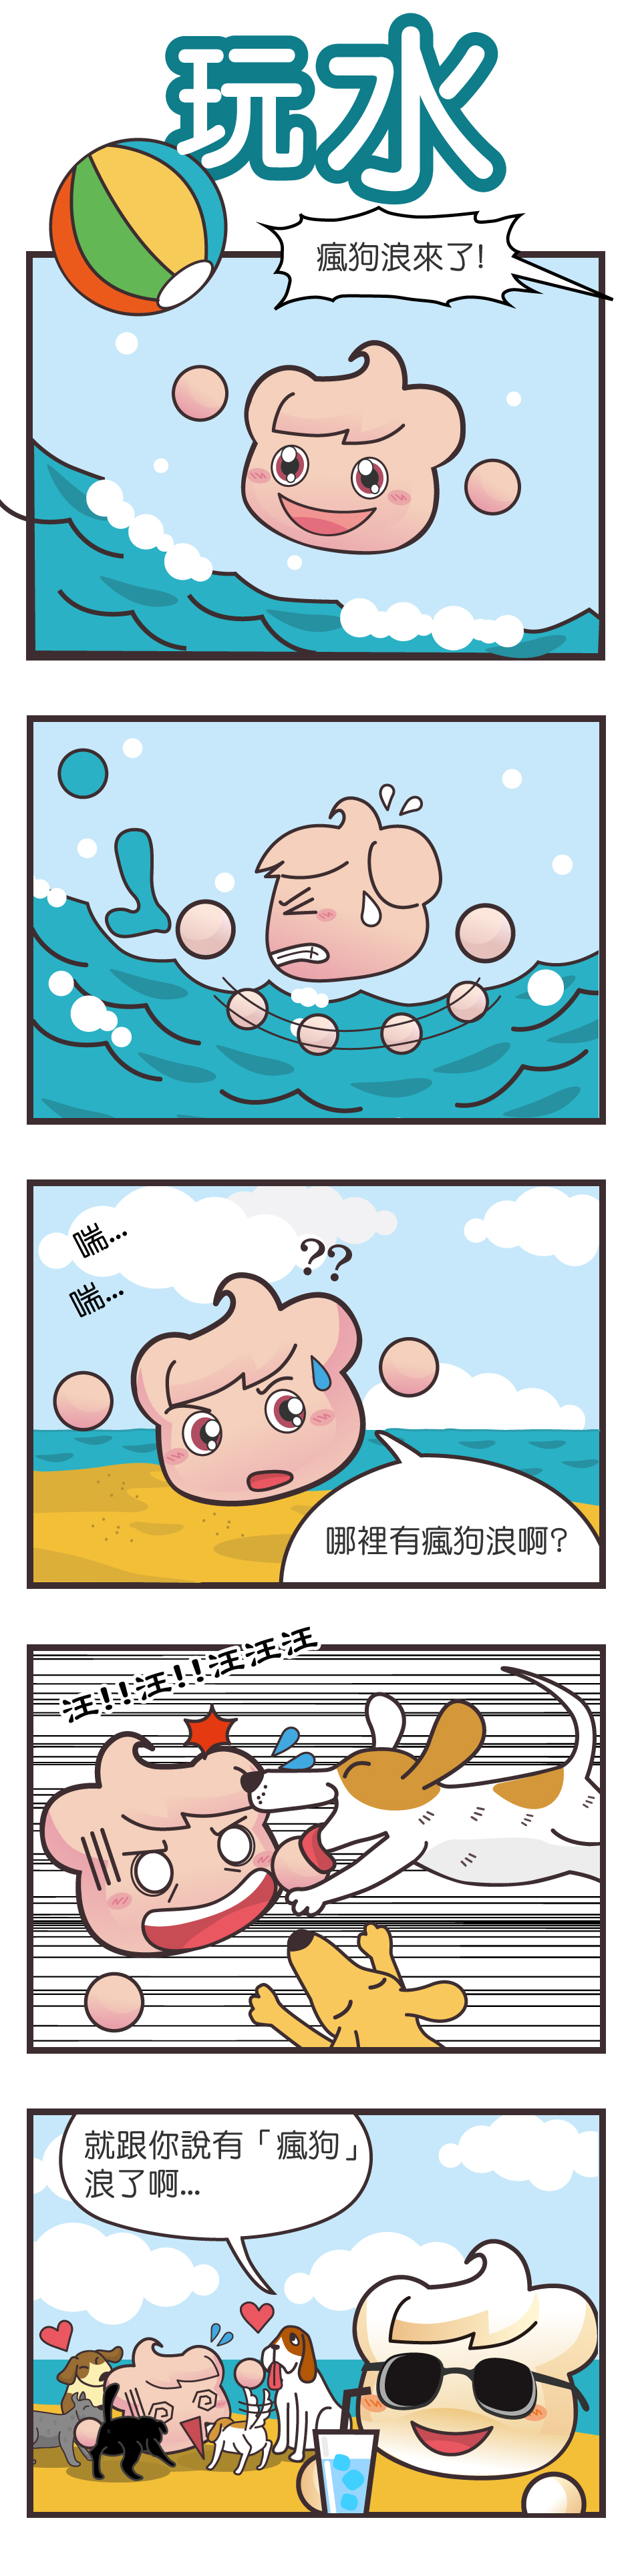 五格漫畫：玩水。在海上玩水的夏雲寶聽到有人大喊瘋狗浪，趕緊游回岸上後，夏雲寶被好多隻衝向他的狗撲倒，原來春雲寶是說「瘋狗」浪。